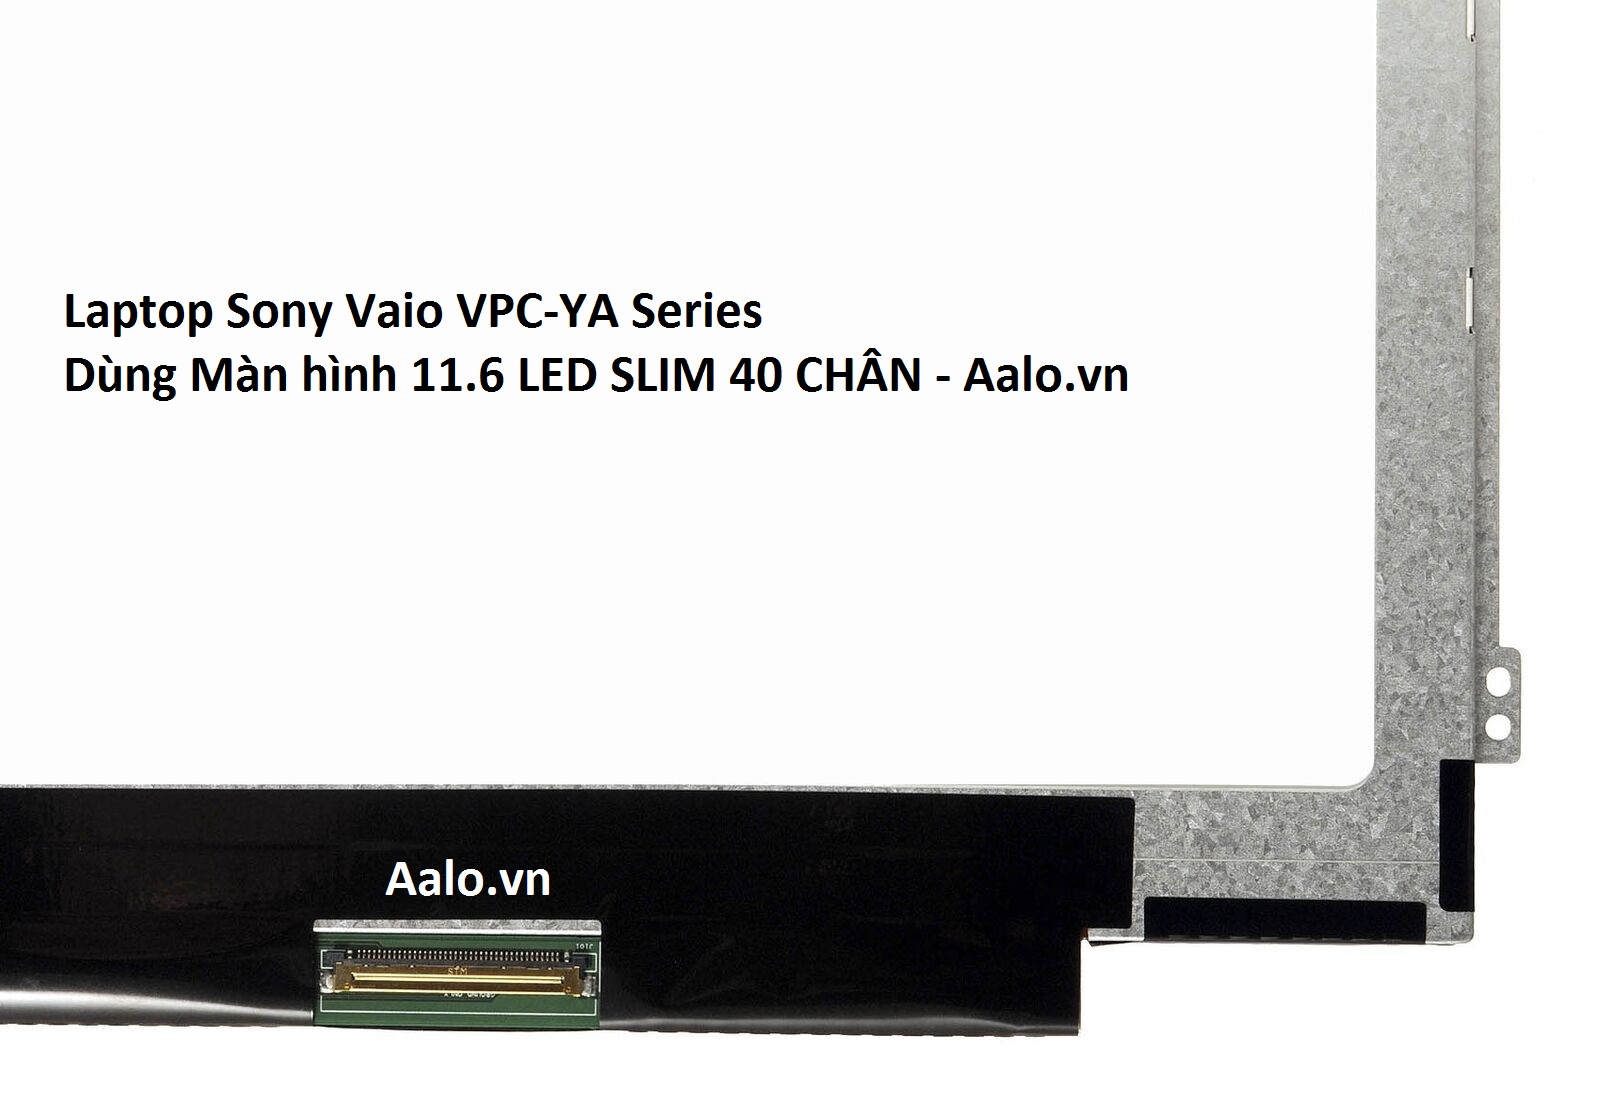 Màn hình Laptop Sony Vaio VPC-YA Series - Aalo.vn